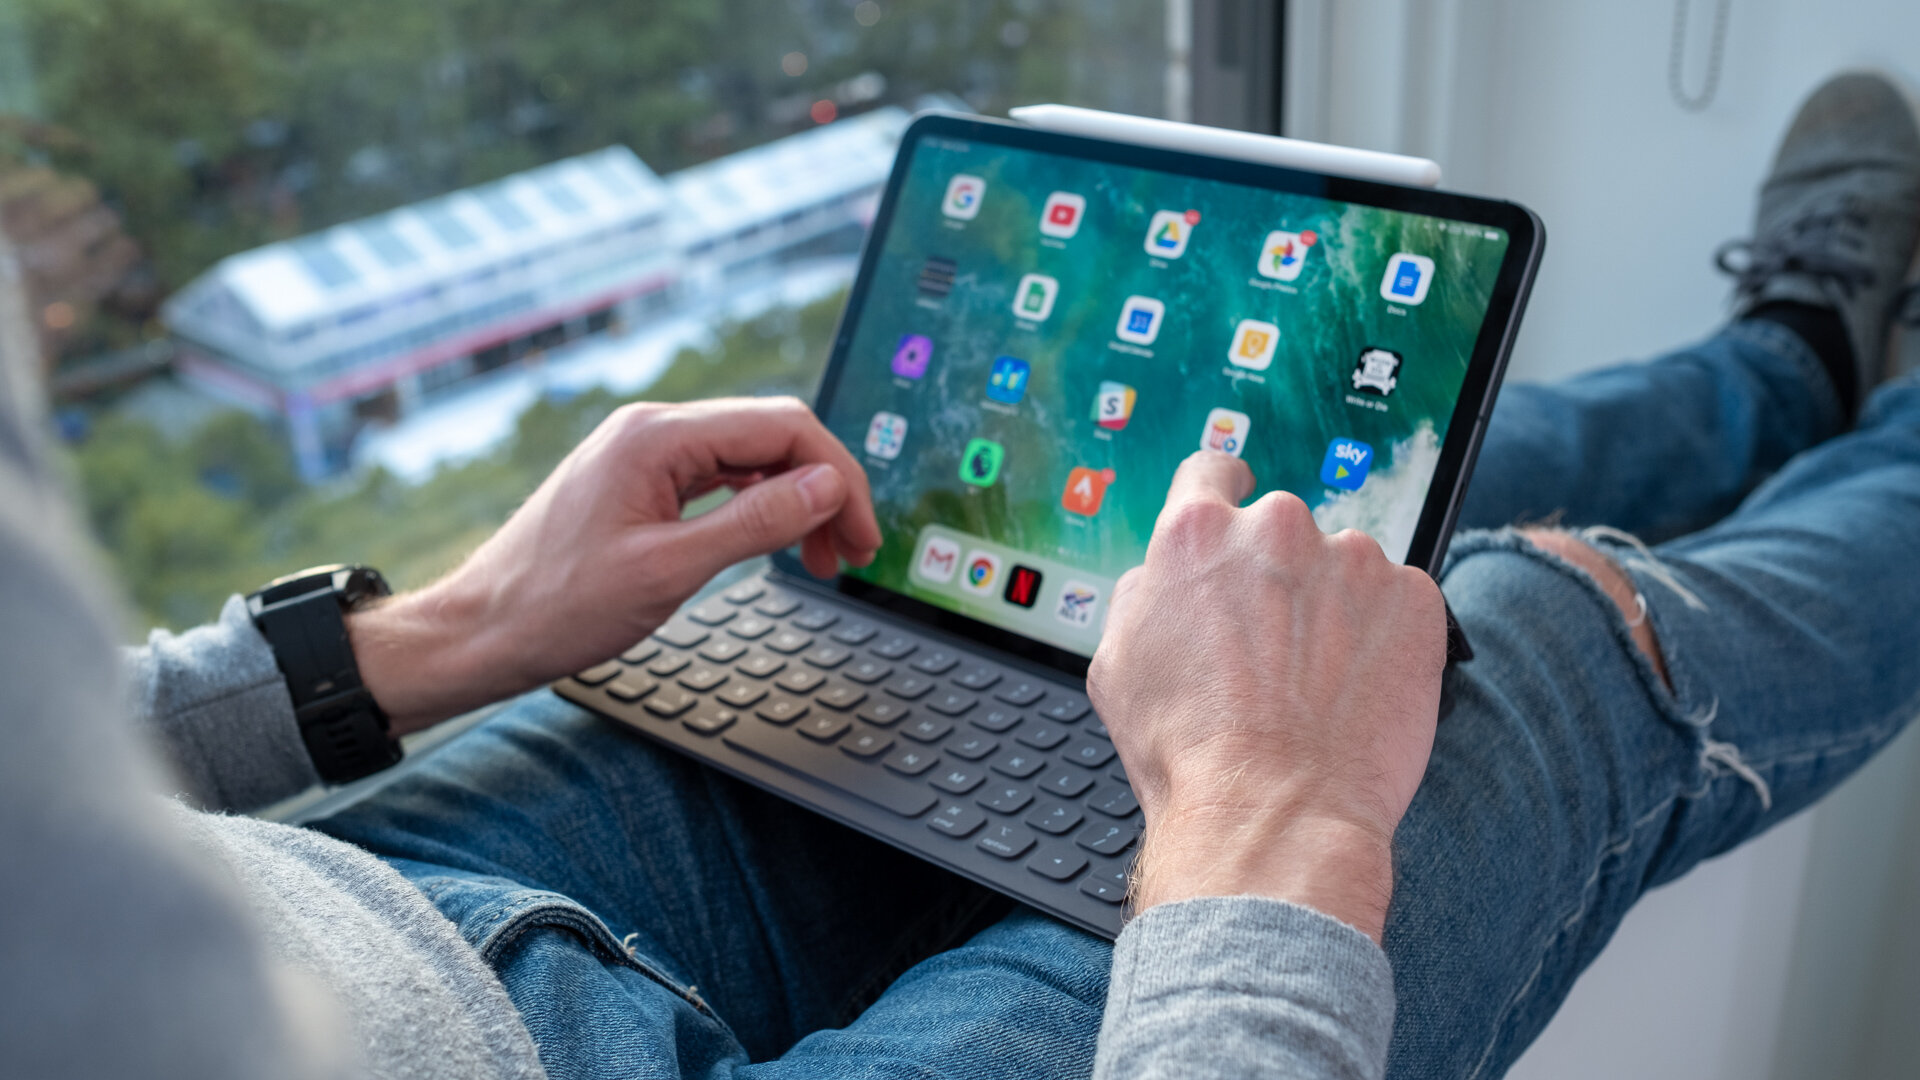 iPad Air 2019 có hiệu năng cực đỉnh trong các thế hệ máy tính bảng